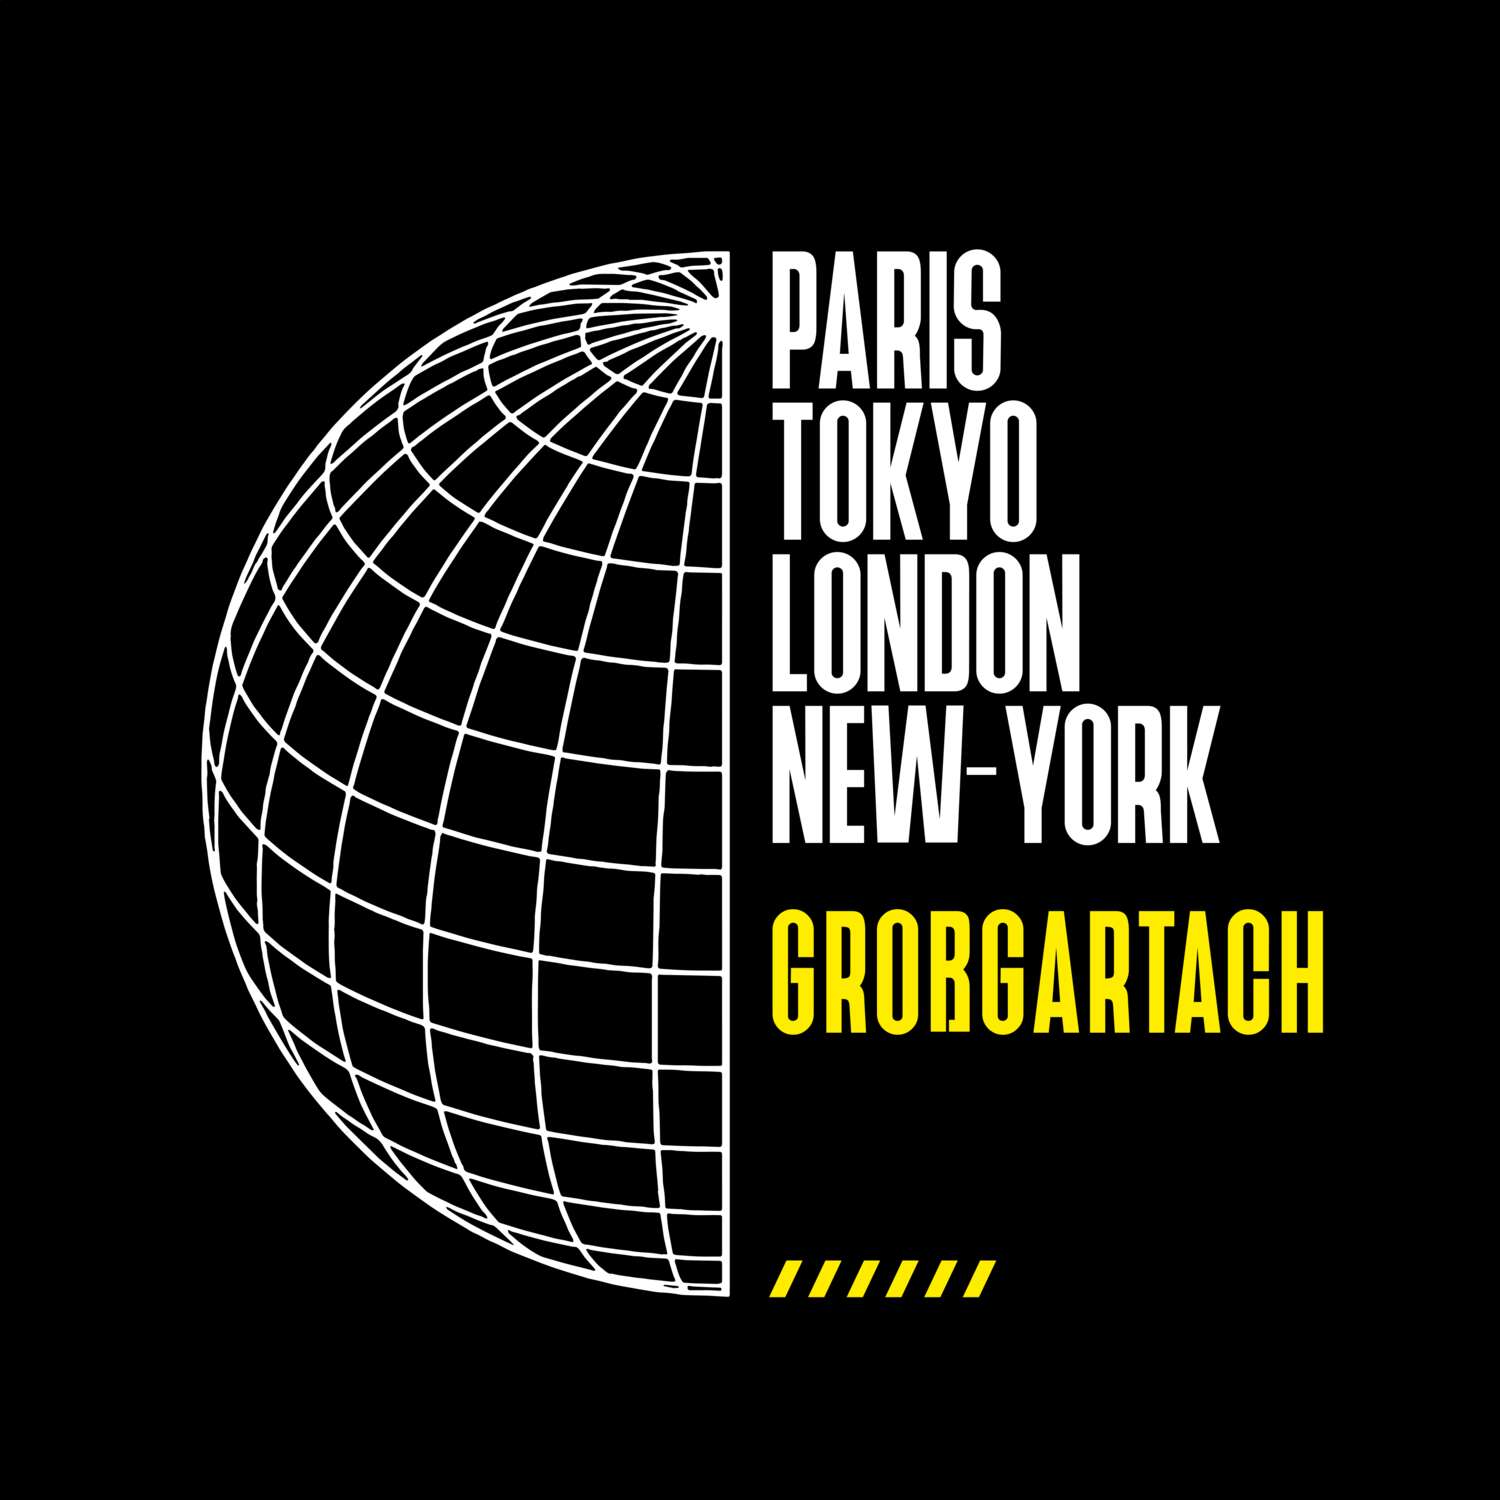 Großgartach T-Shirt »Paris Tokyo London«